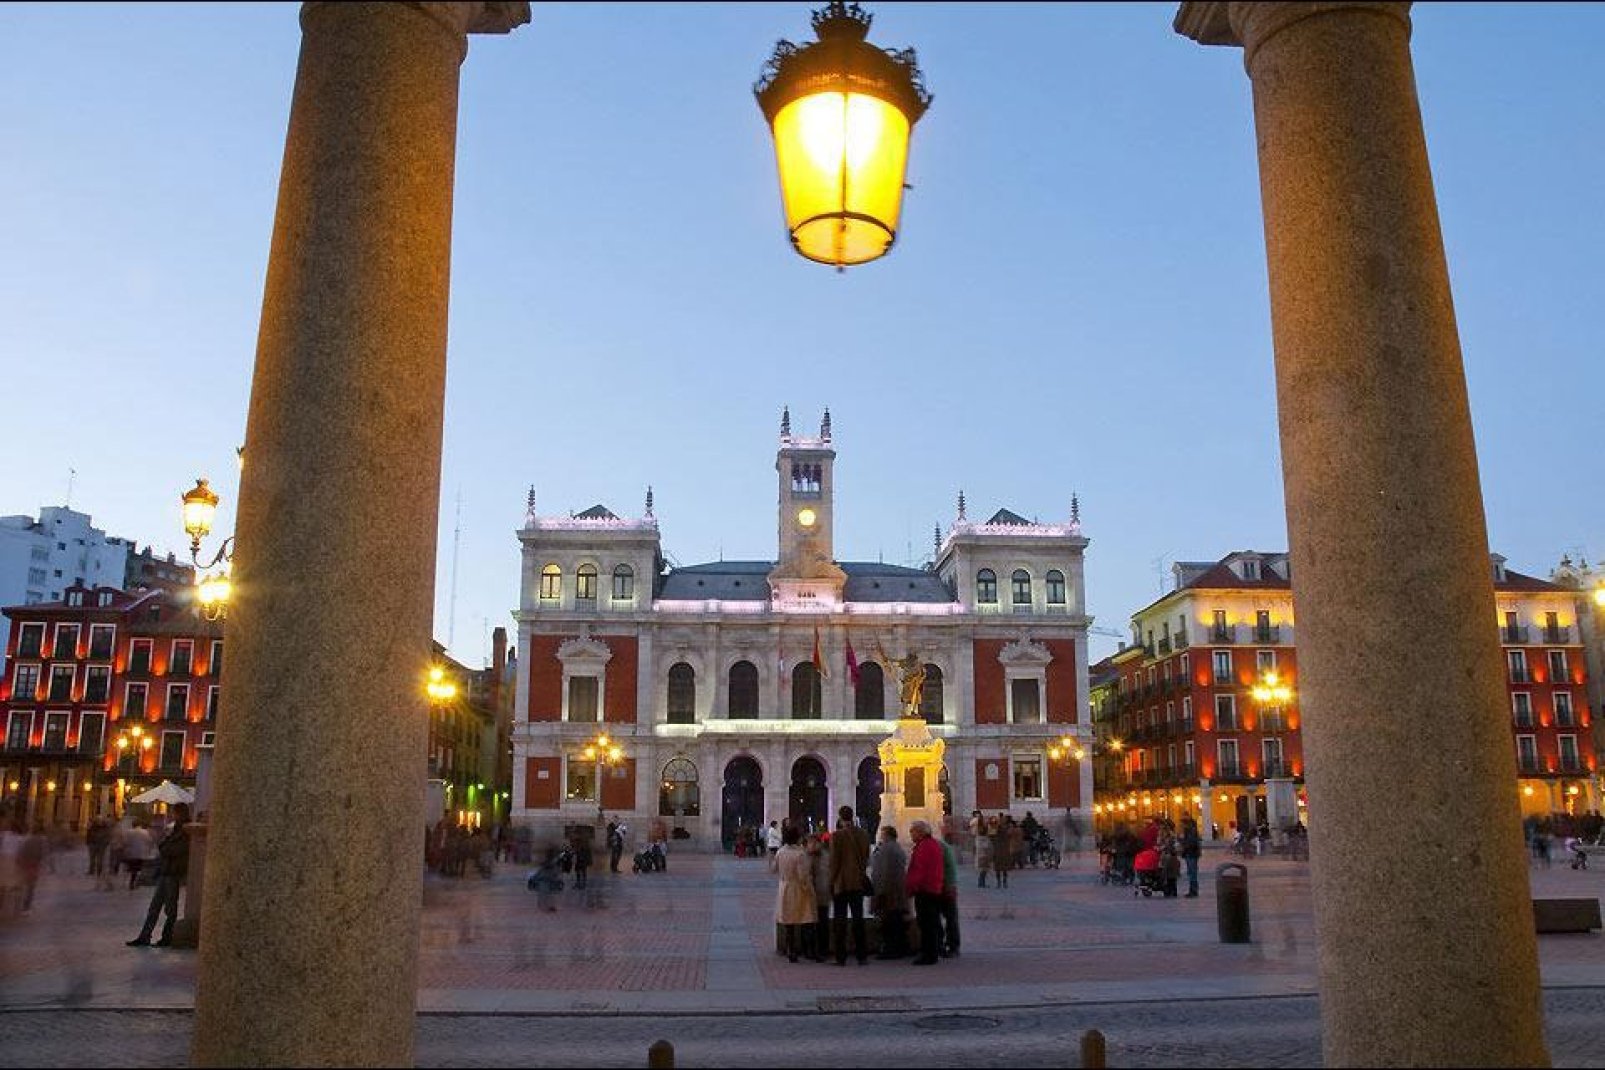 Die Einwohner versammeln sich gegen Abend auf dem Plaza Mayor, wie dies in Spanien üblich ist.